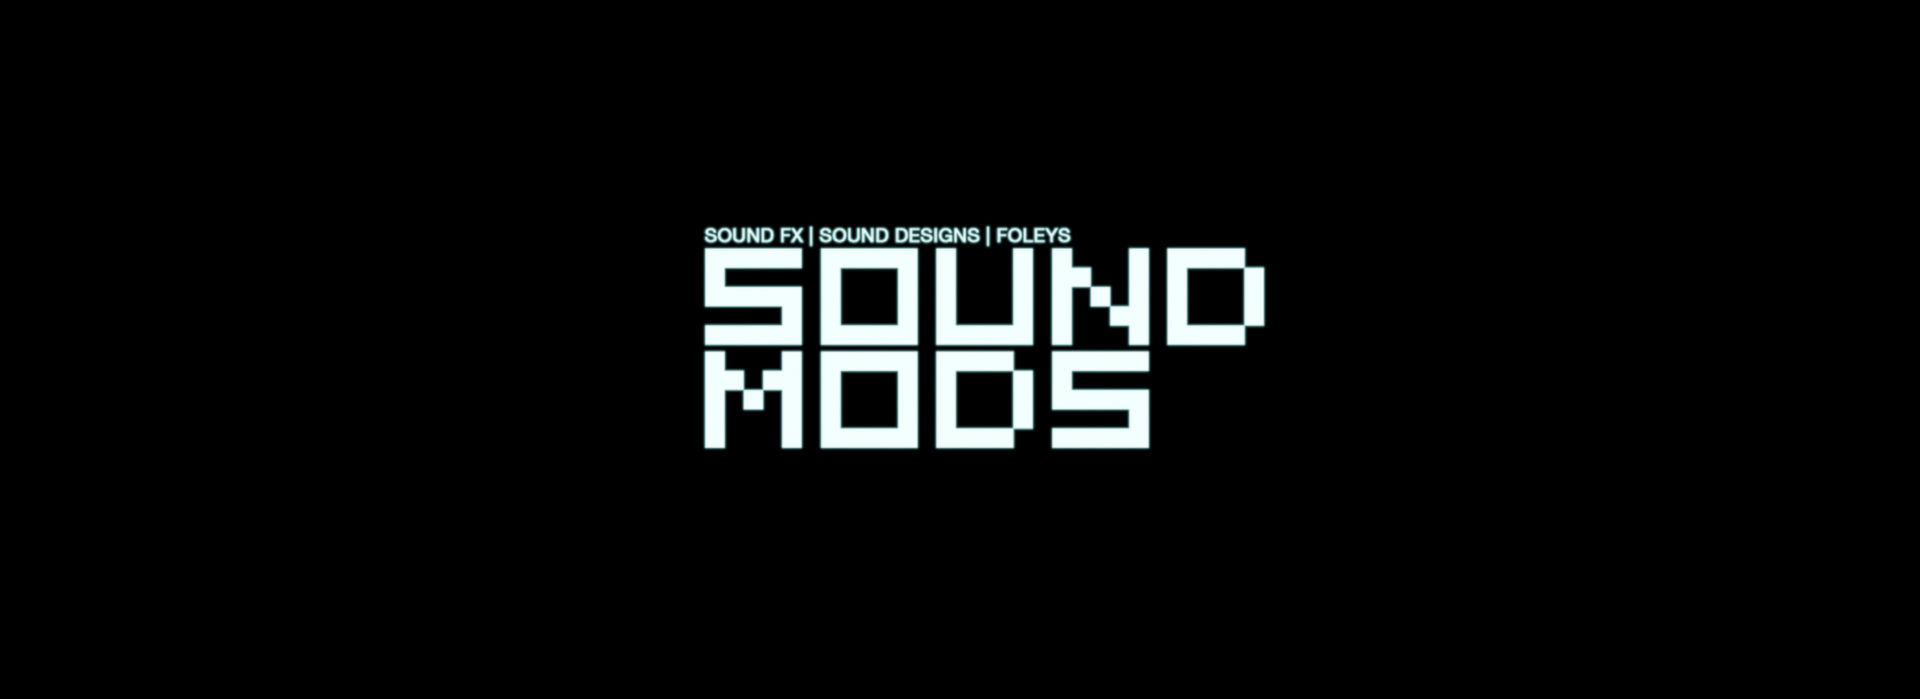 SOUND MODS